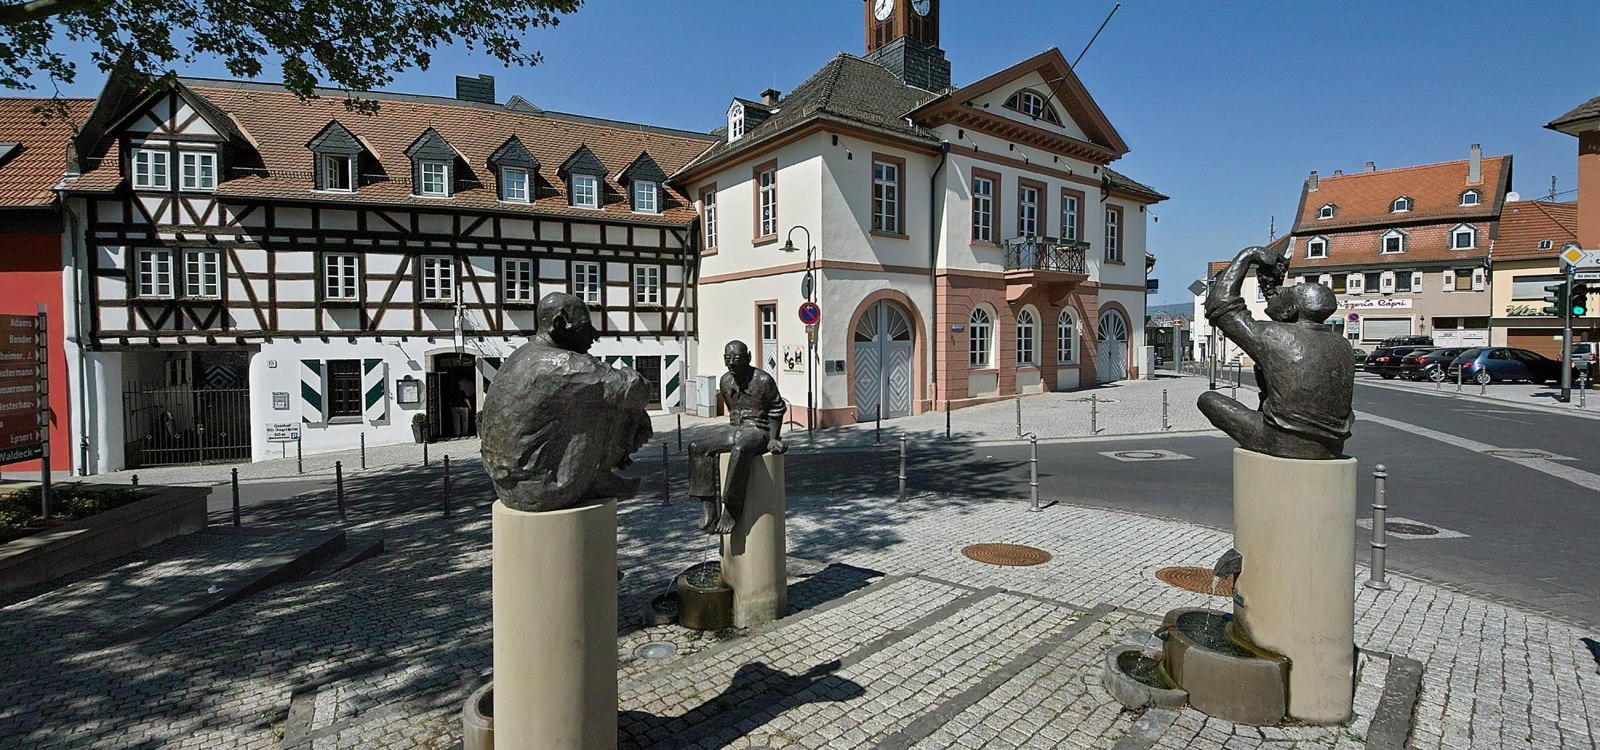 Altes Rathaus Ober-Ingelheim